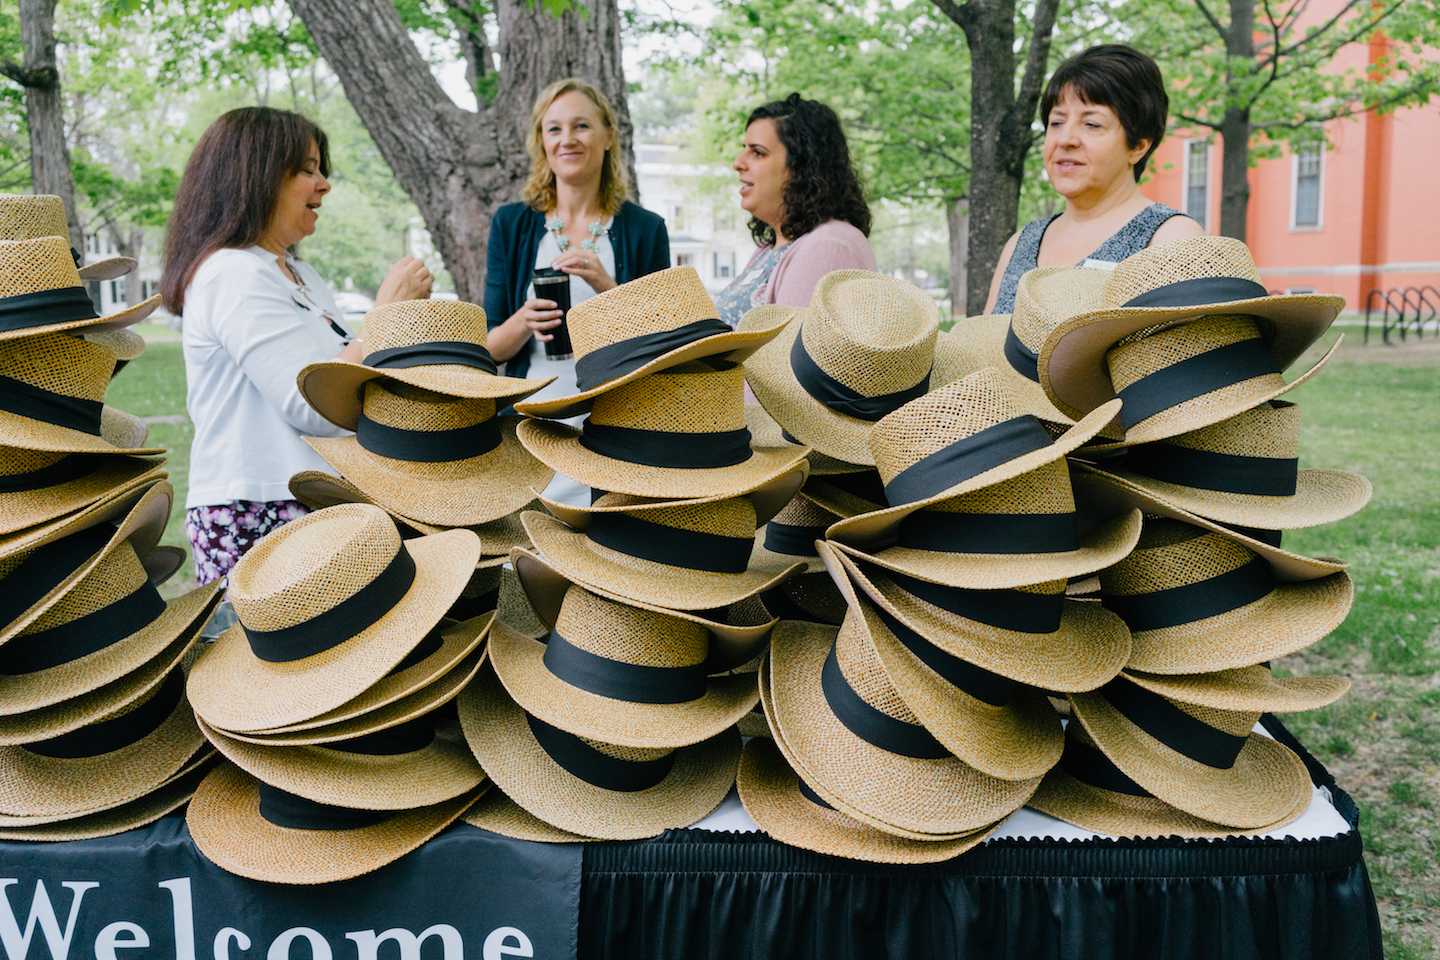 Staff distribute Bowdoin alumni hats.